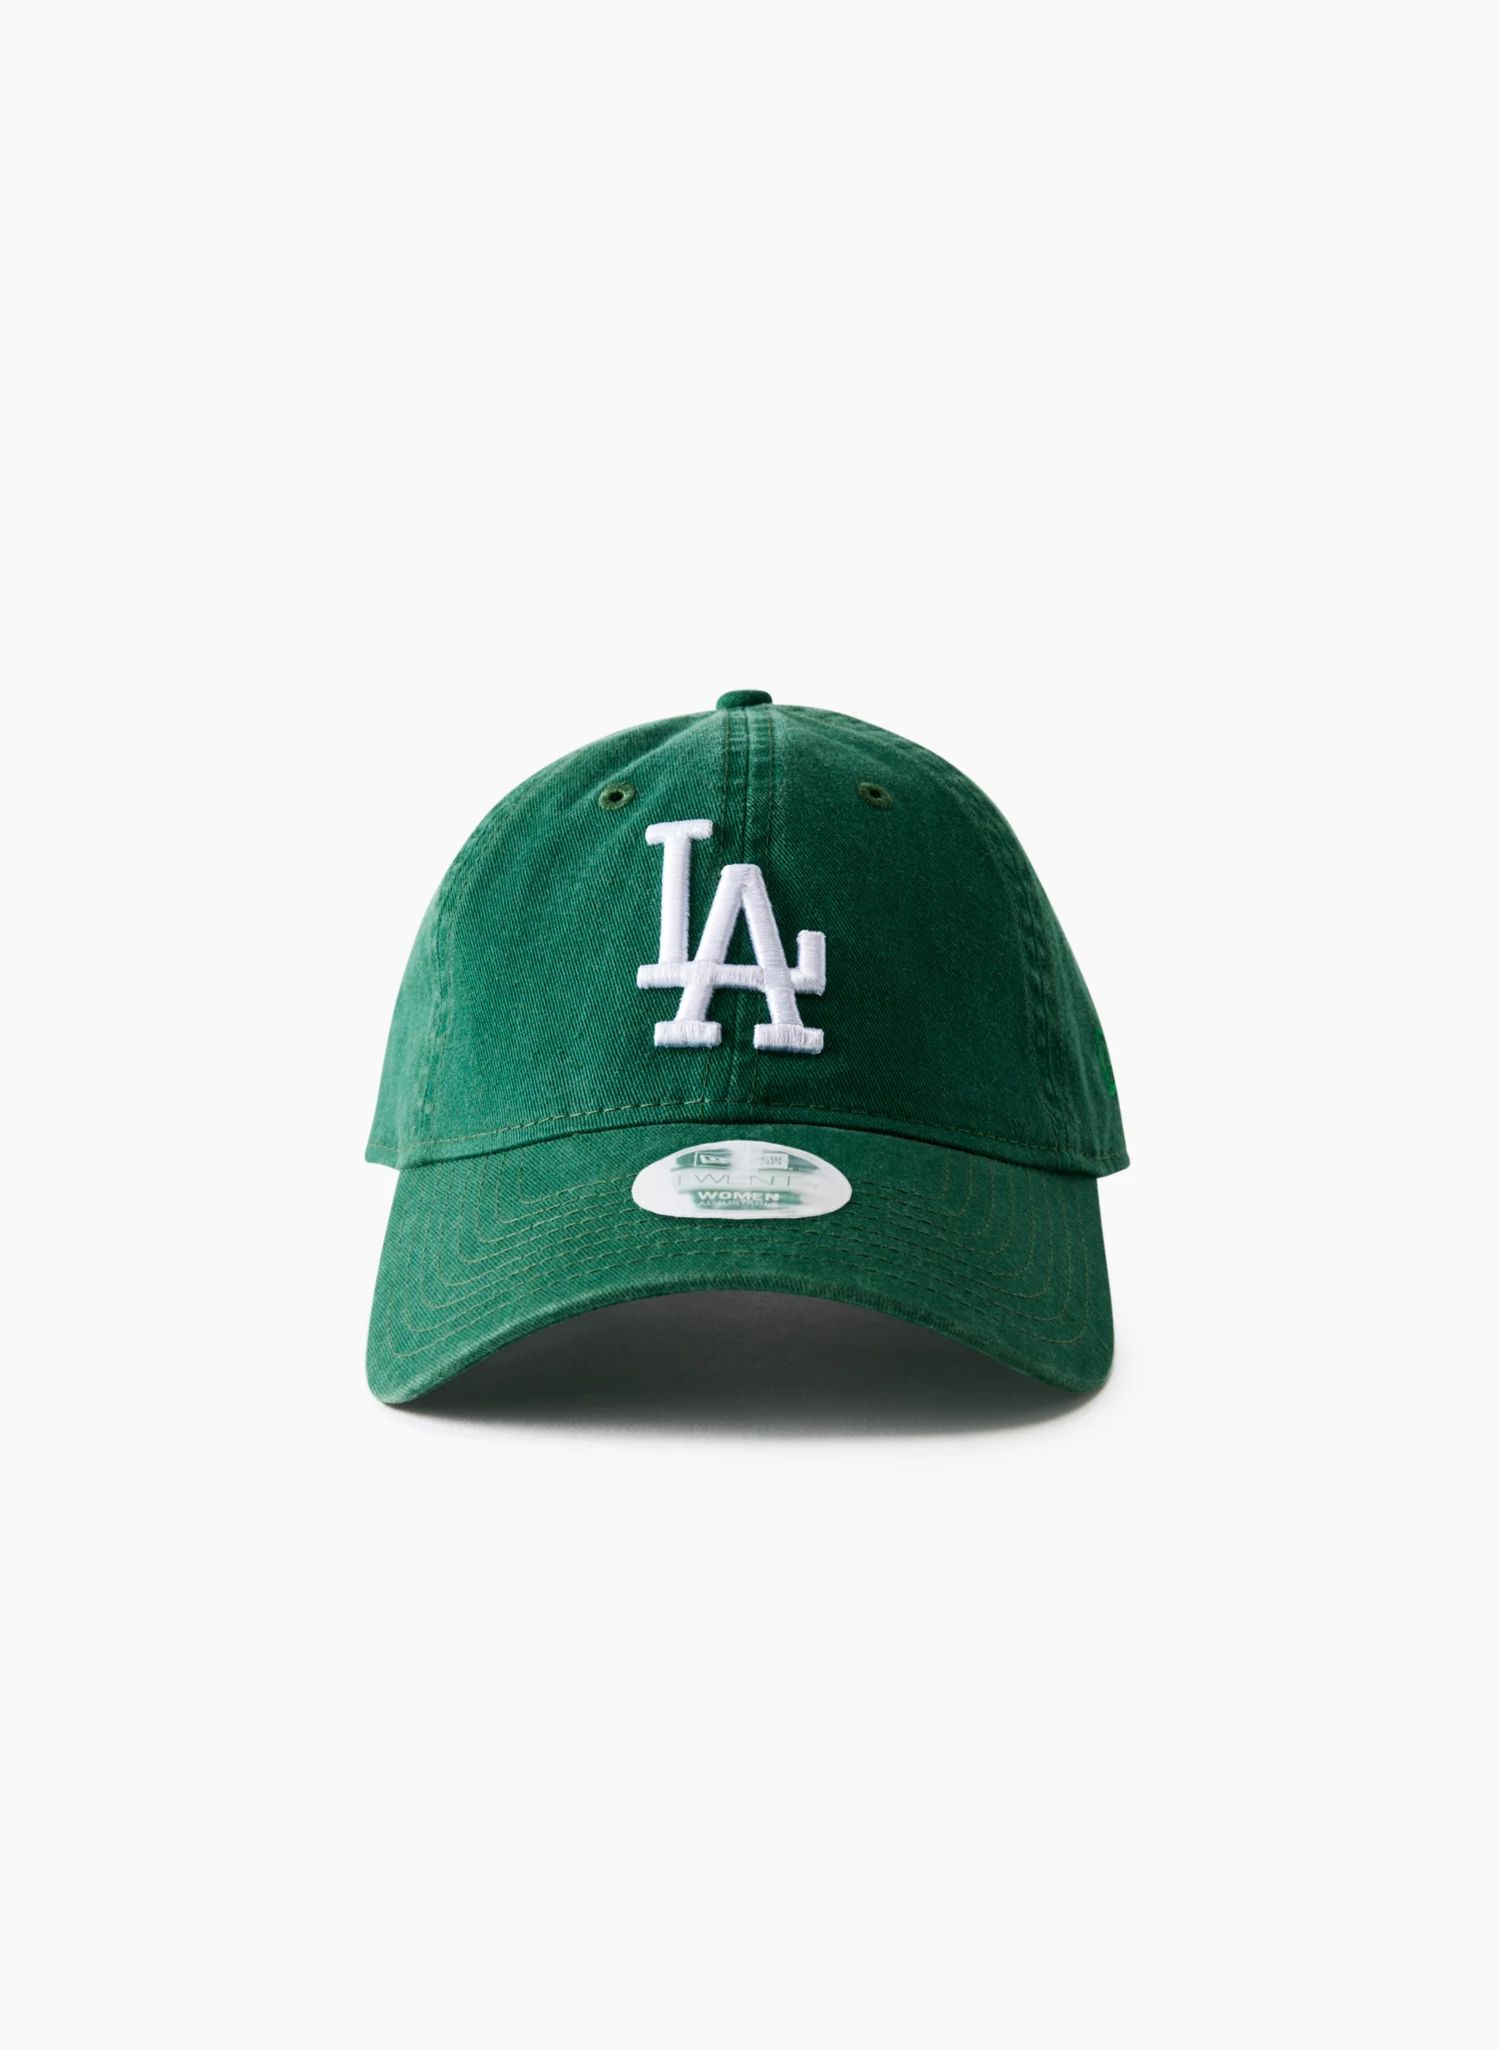 LOS ANGELES DODGERS BASEBALL CAP | Aritzia